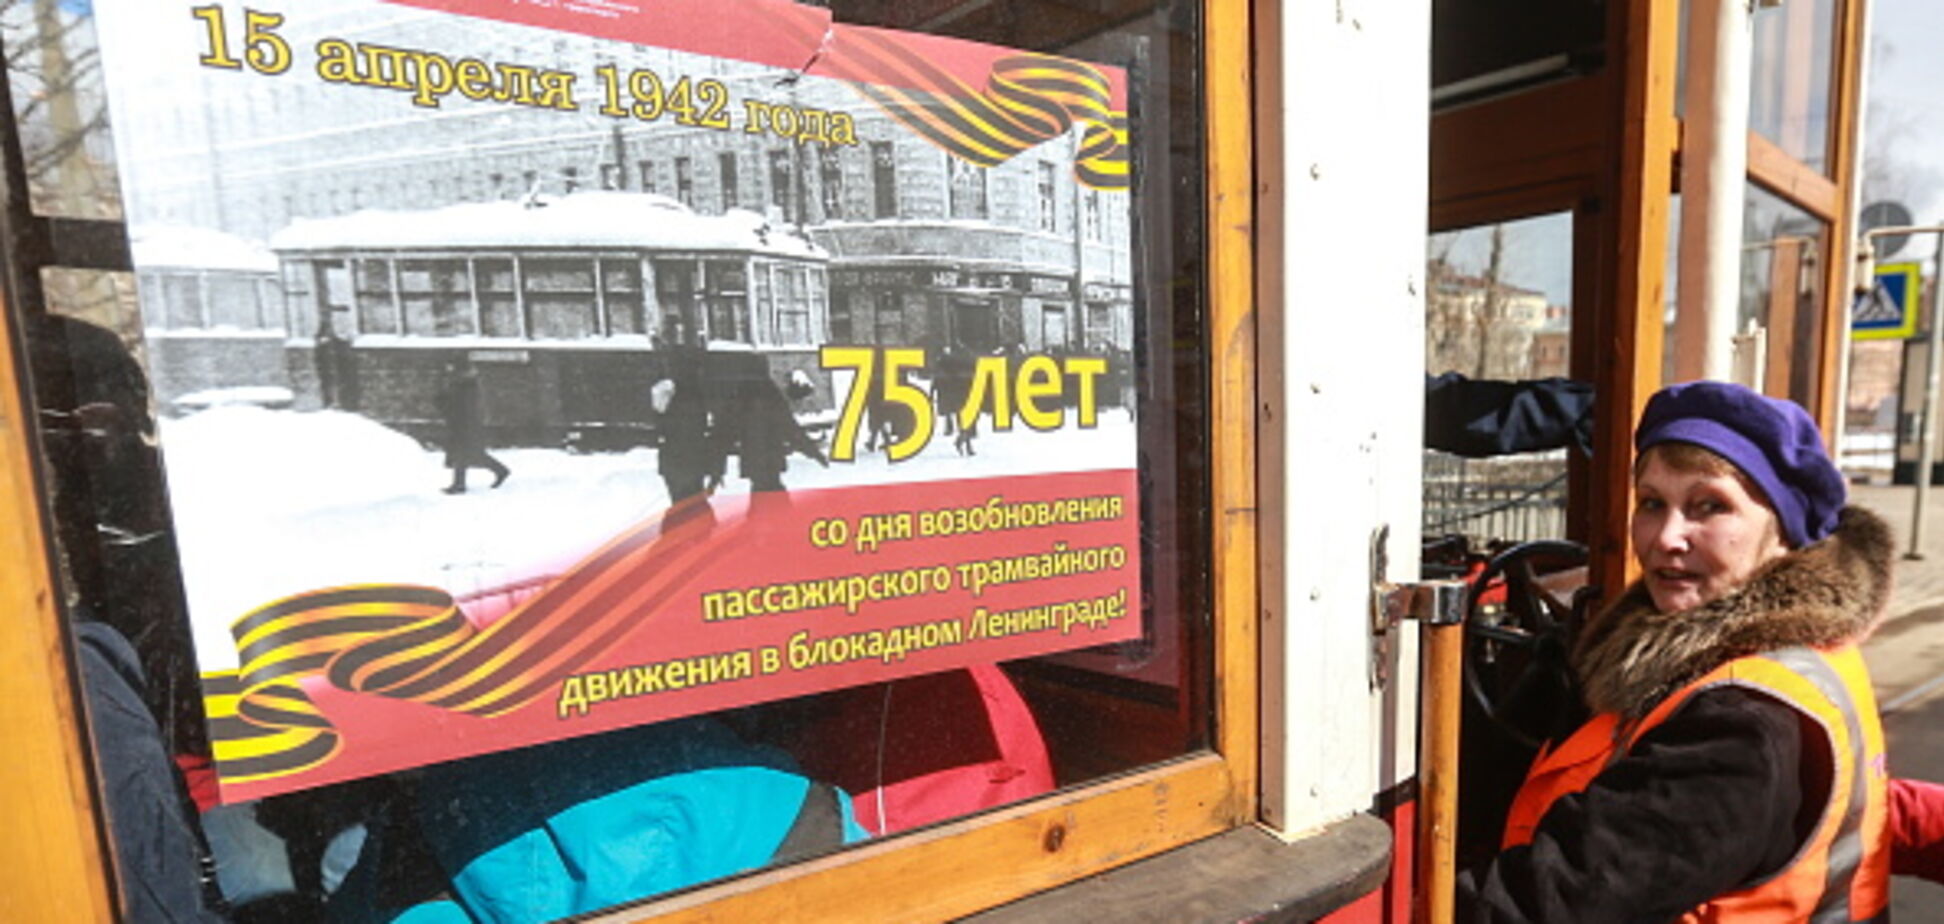 Новости из России: пенсионеры лапу сосут - на лекарства не хватает